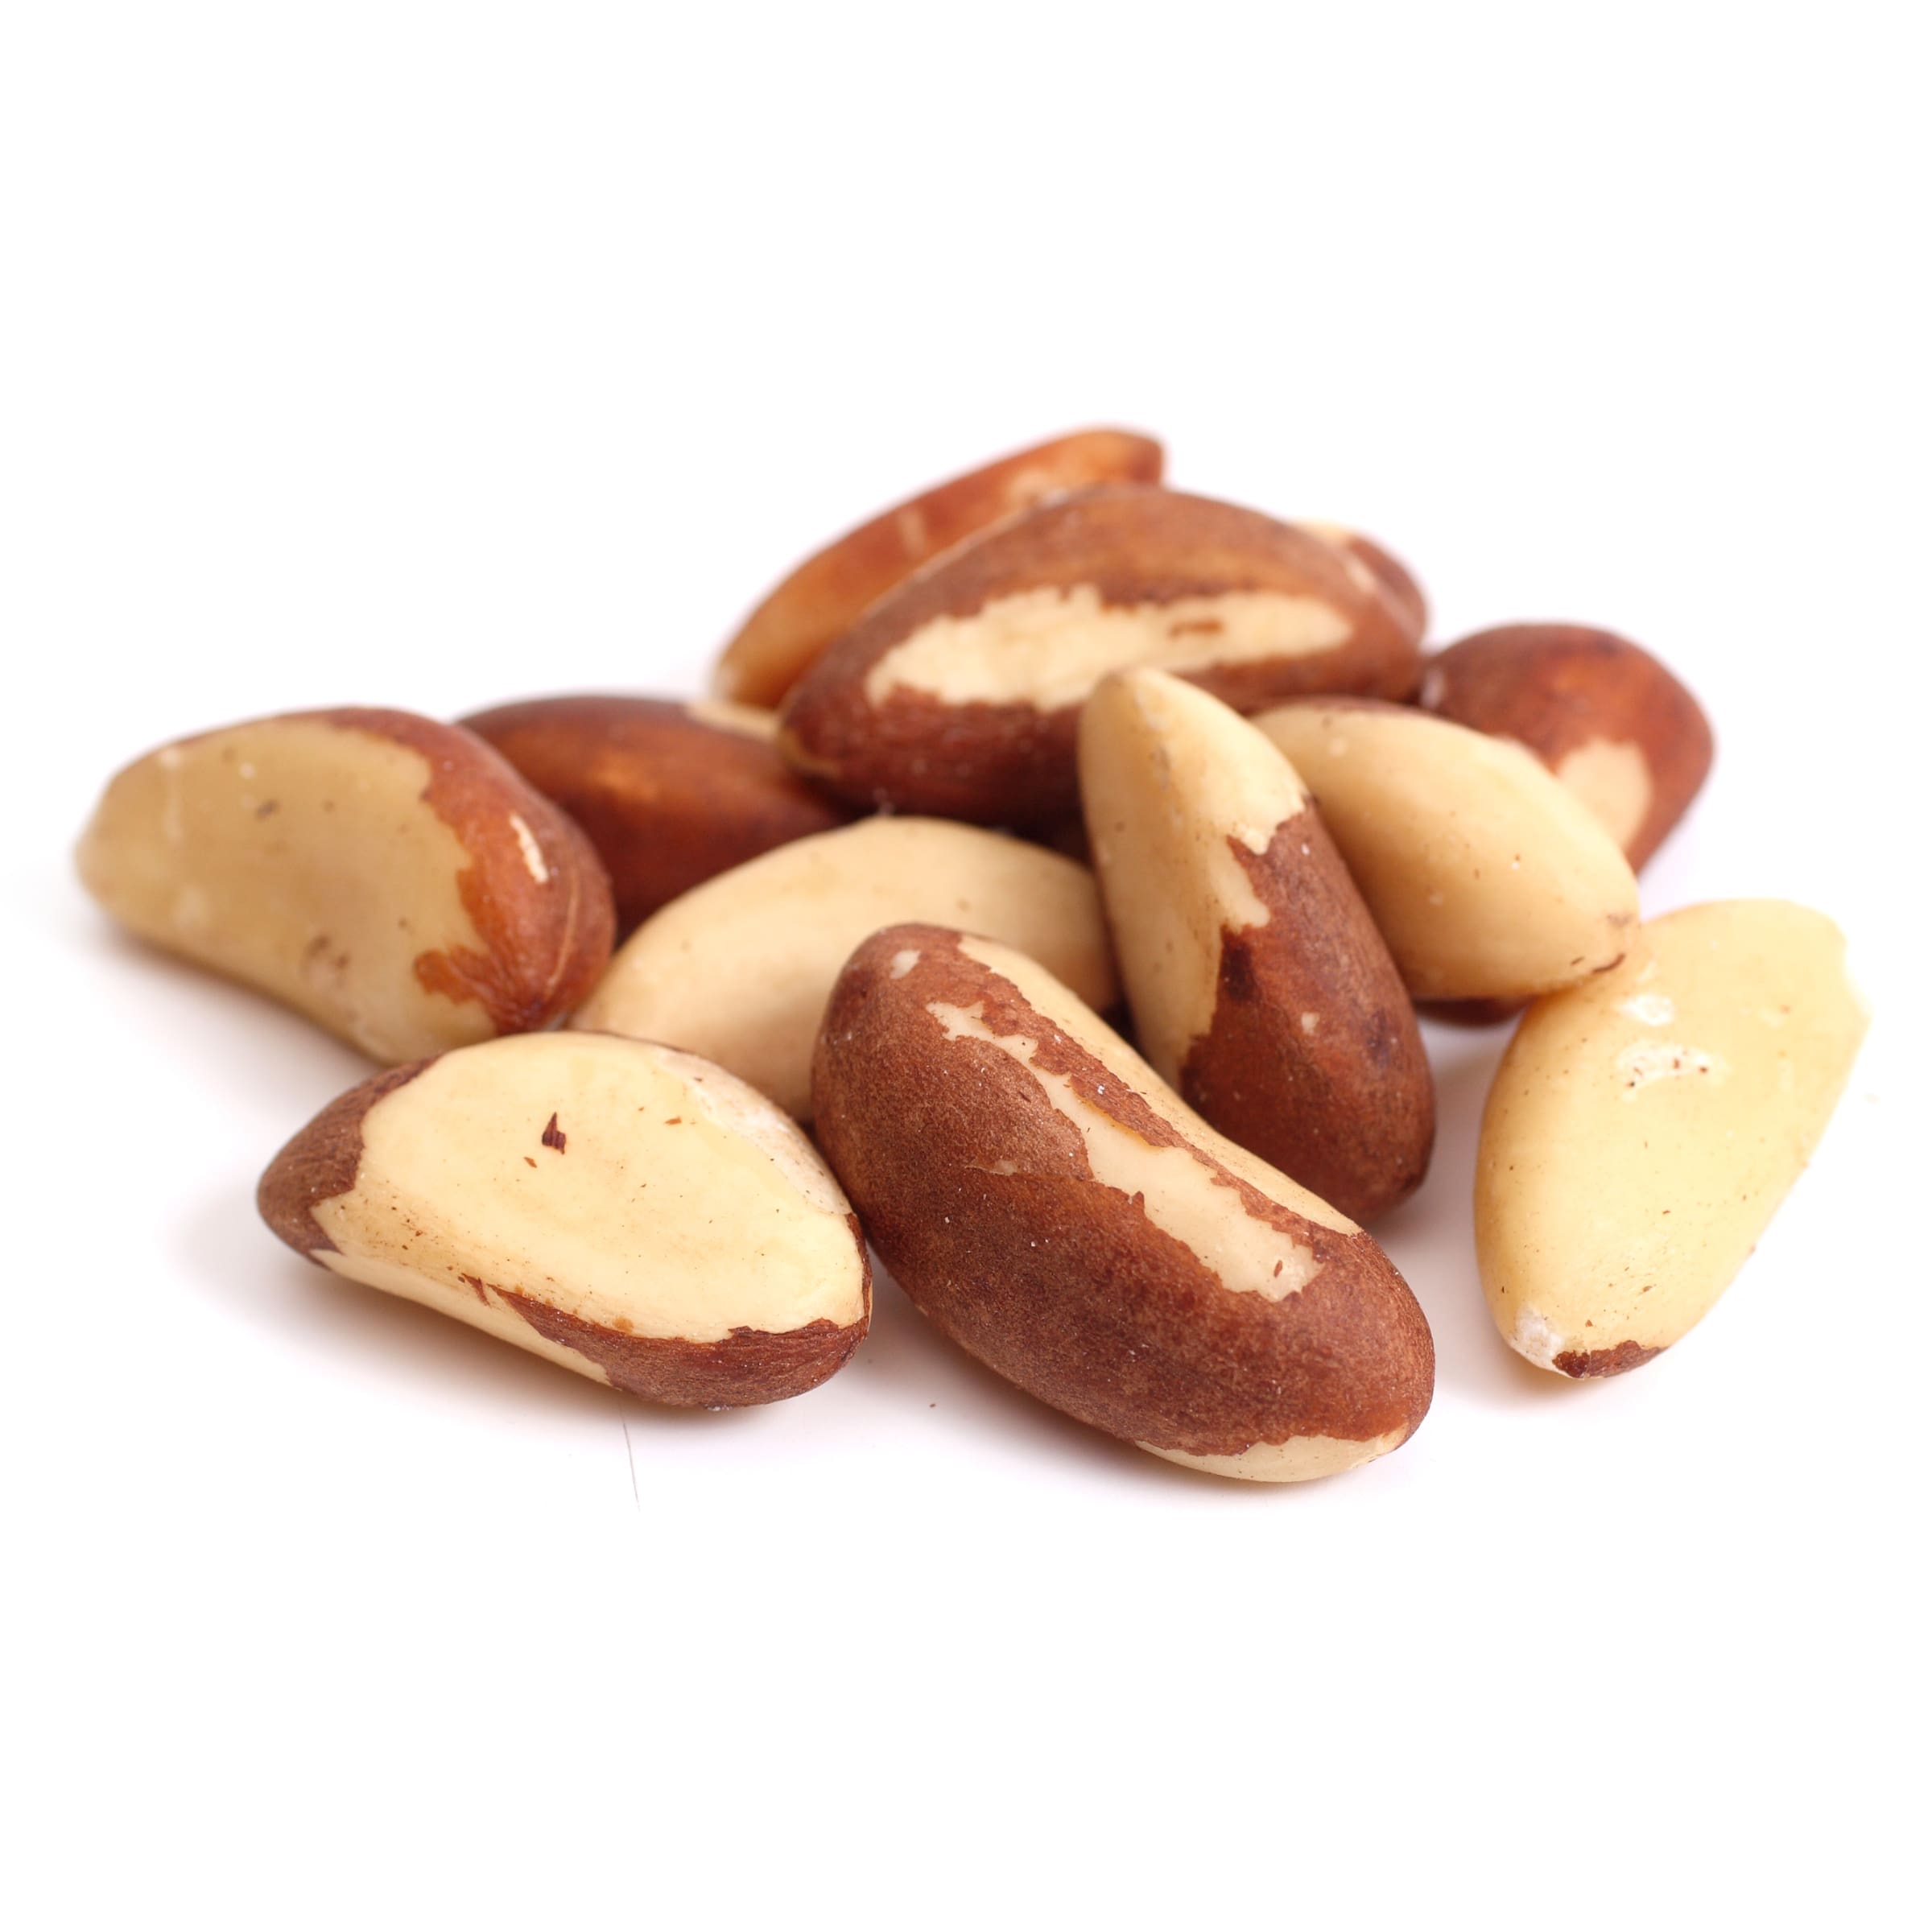 Brazil-nuts-pile Brazil Nuts